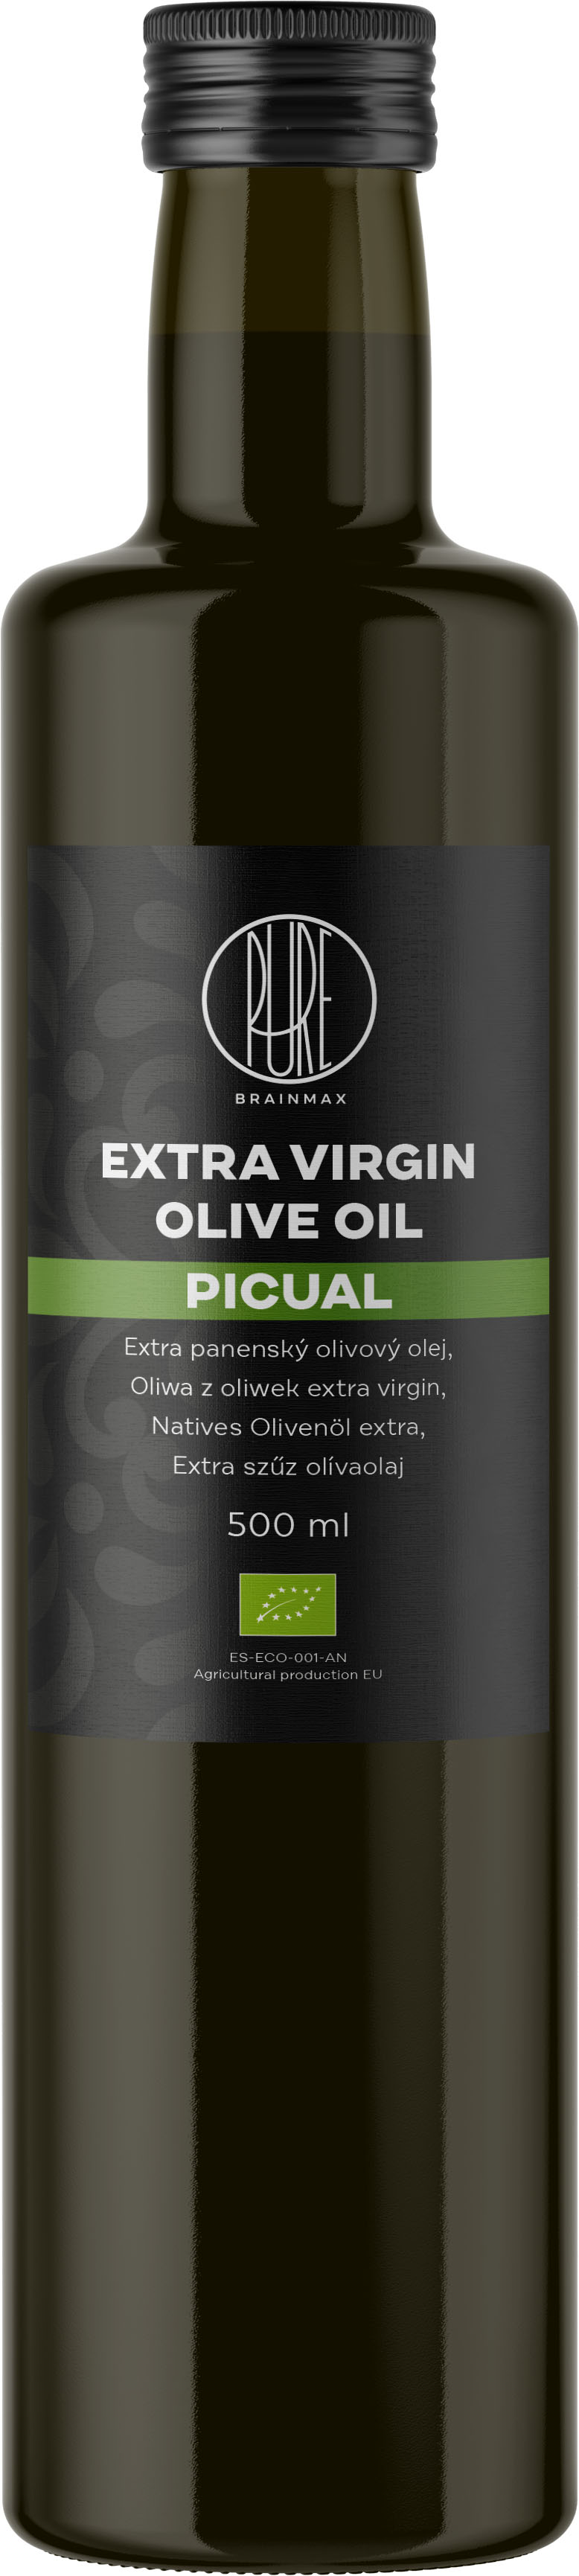 BrainMax Pure Extra panenský olivový olej Picual, BIO, 500 ml Španělský extra panenský olivový olej s nejvyšším množstvím polyfenolů // * ES-ECO-001-AN certifikát